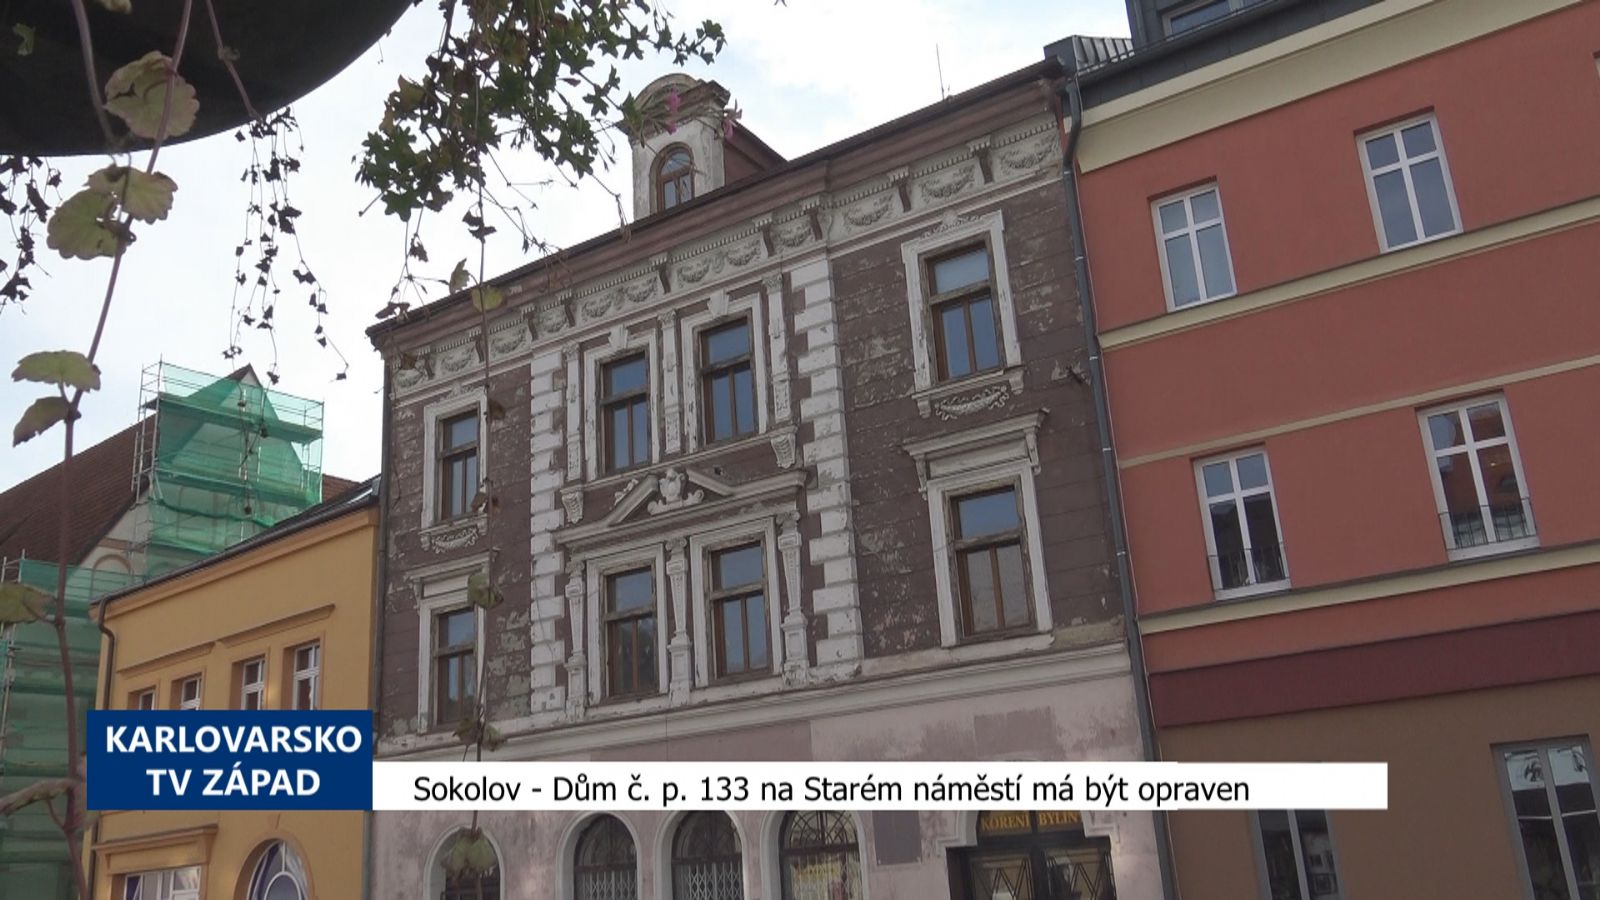 Sokolov: Dům č.p.133 na Starém náměstí má být opraven (TV Západ)